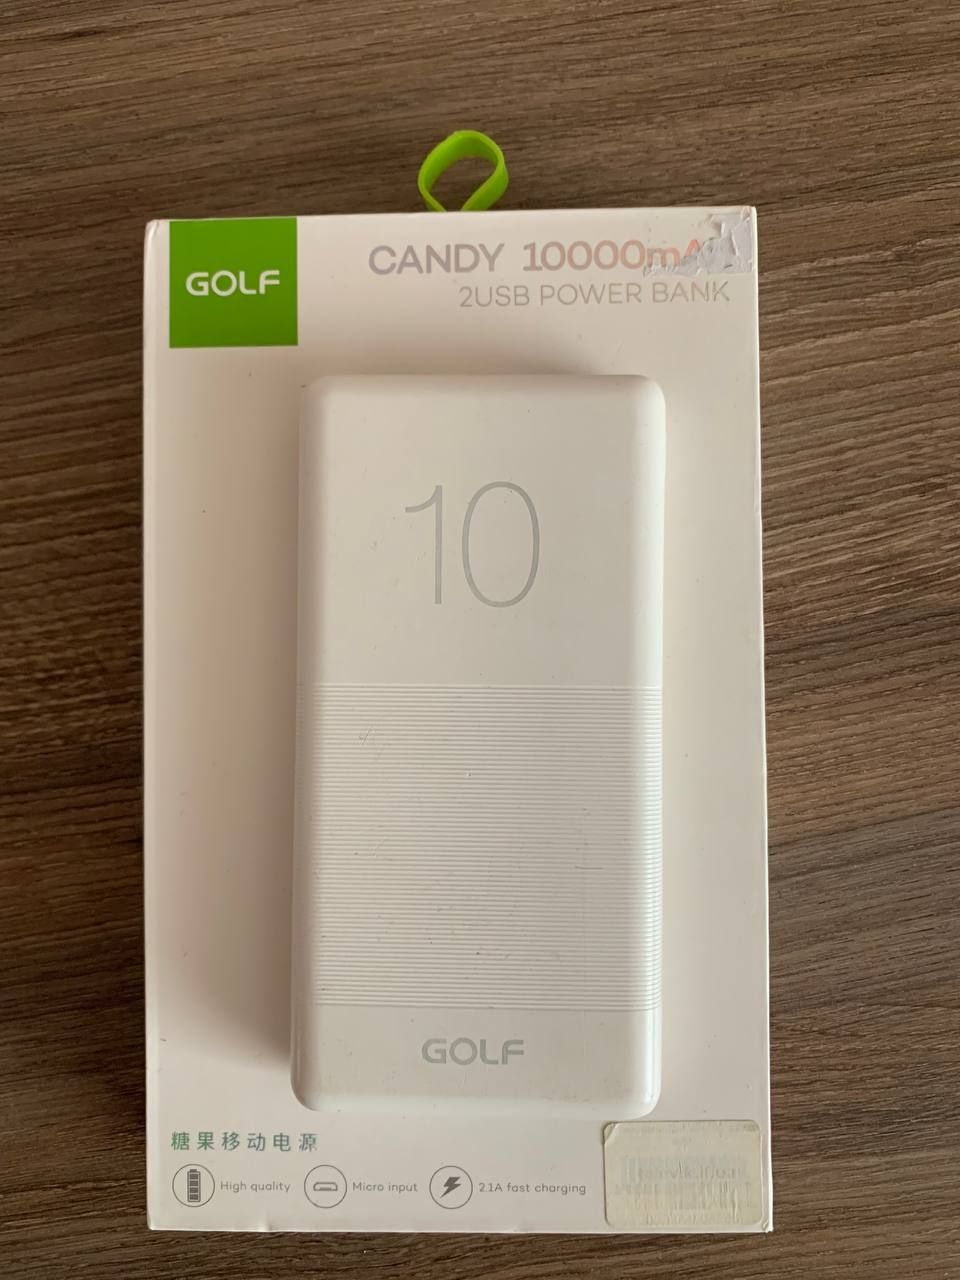 Павербанк Golf Candy 10000 mAh.